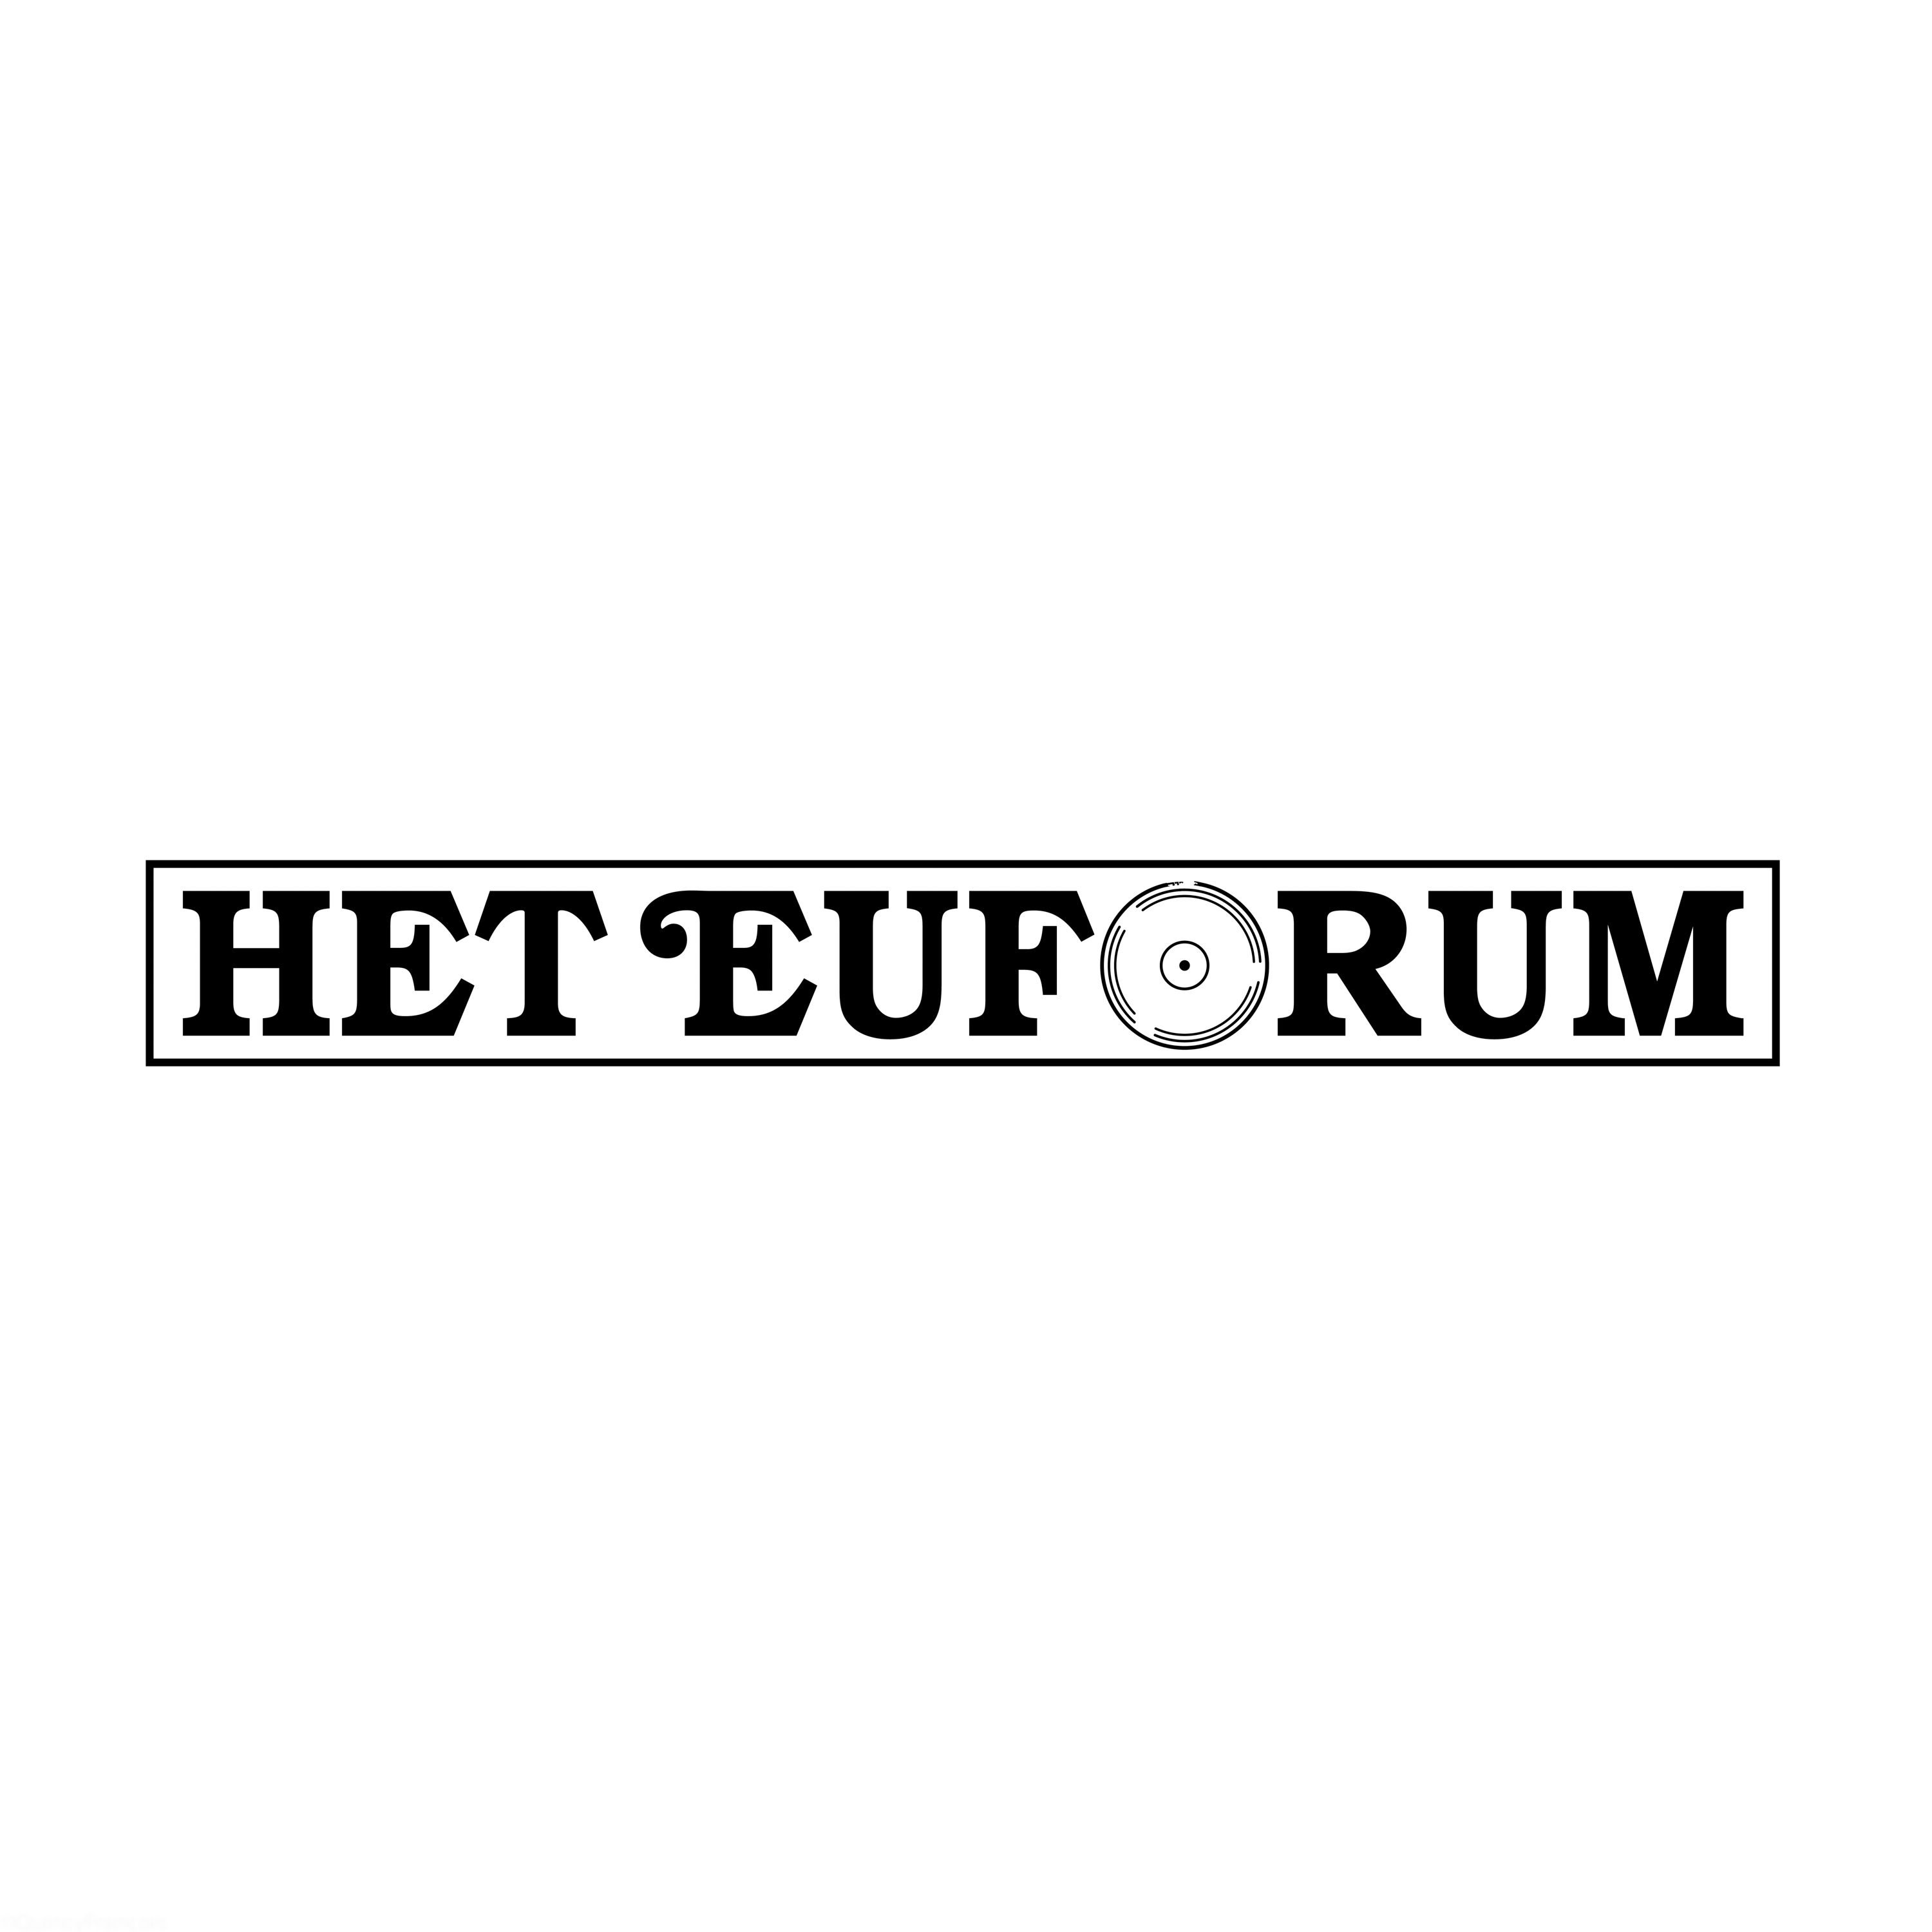 Project: Het Euforum